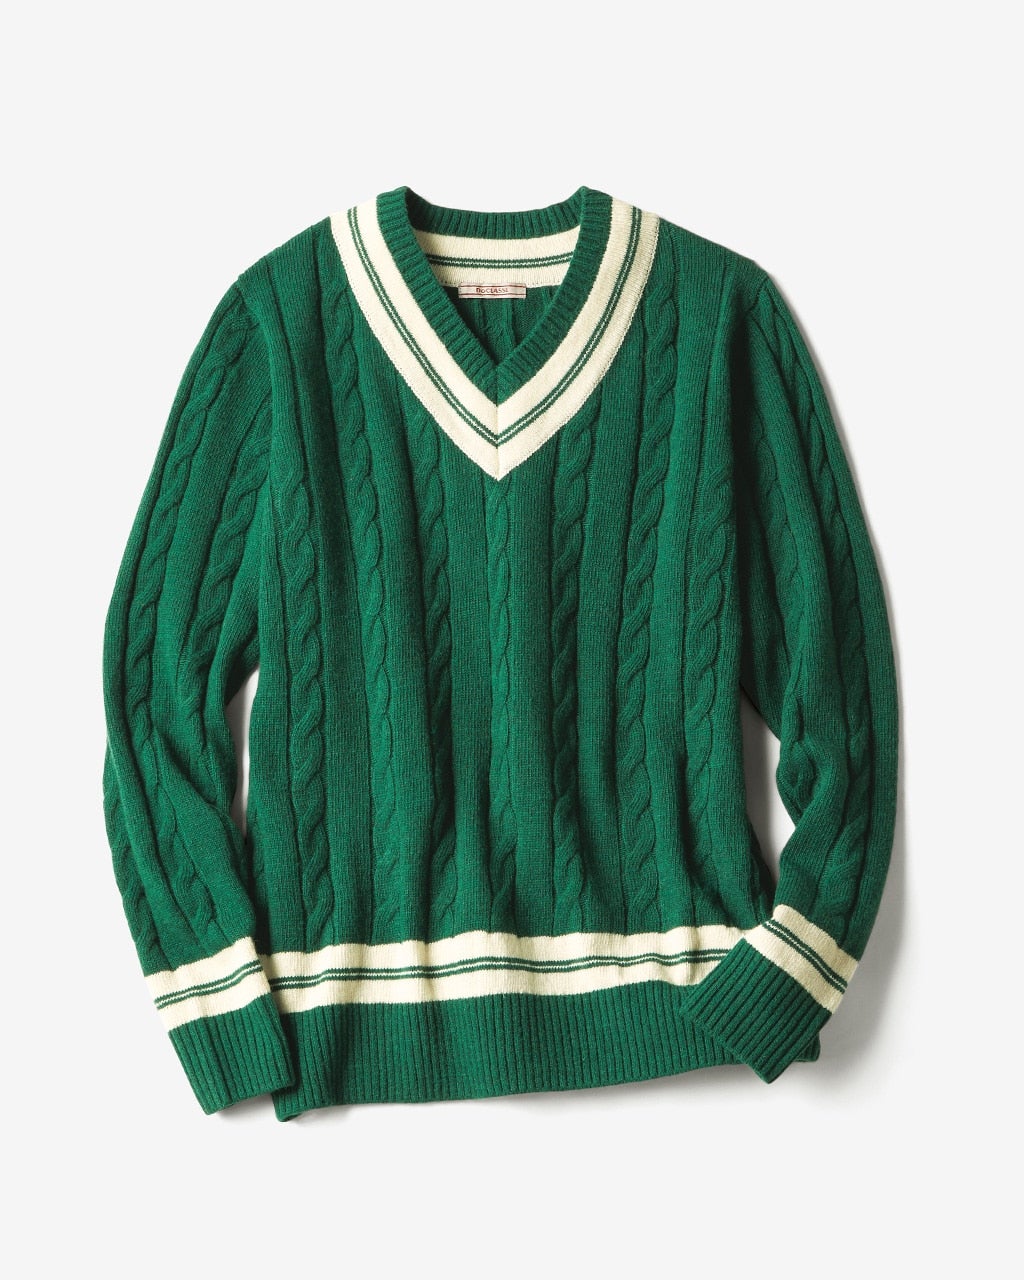 チルデンVネックセーター/40代50代からのレディース・メンズ